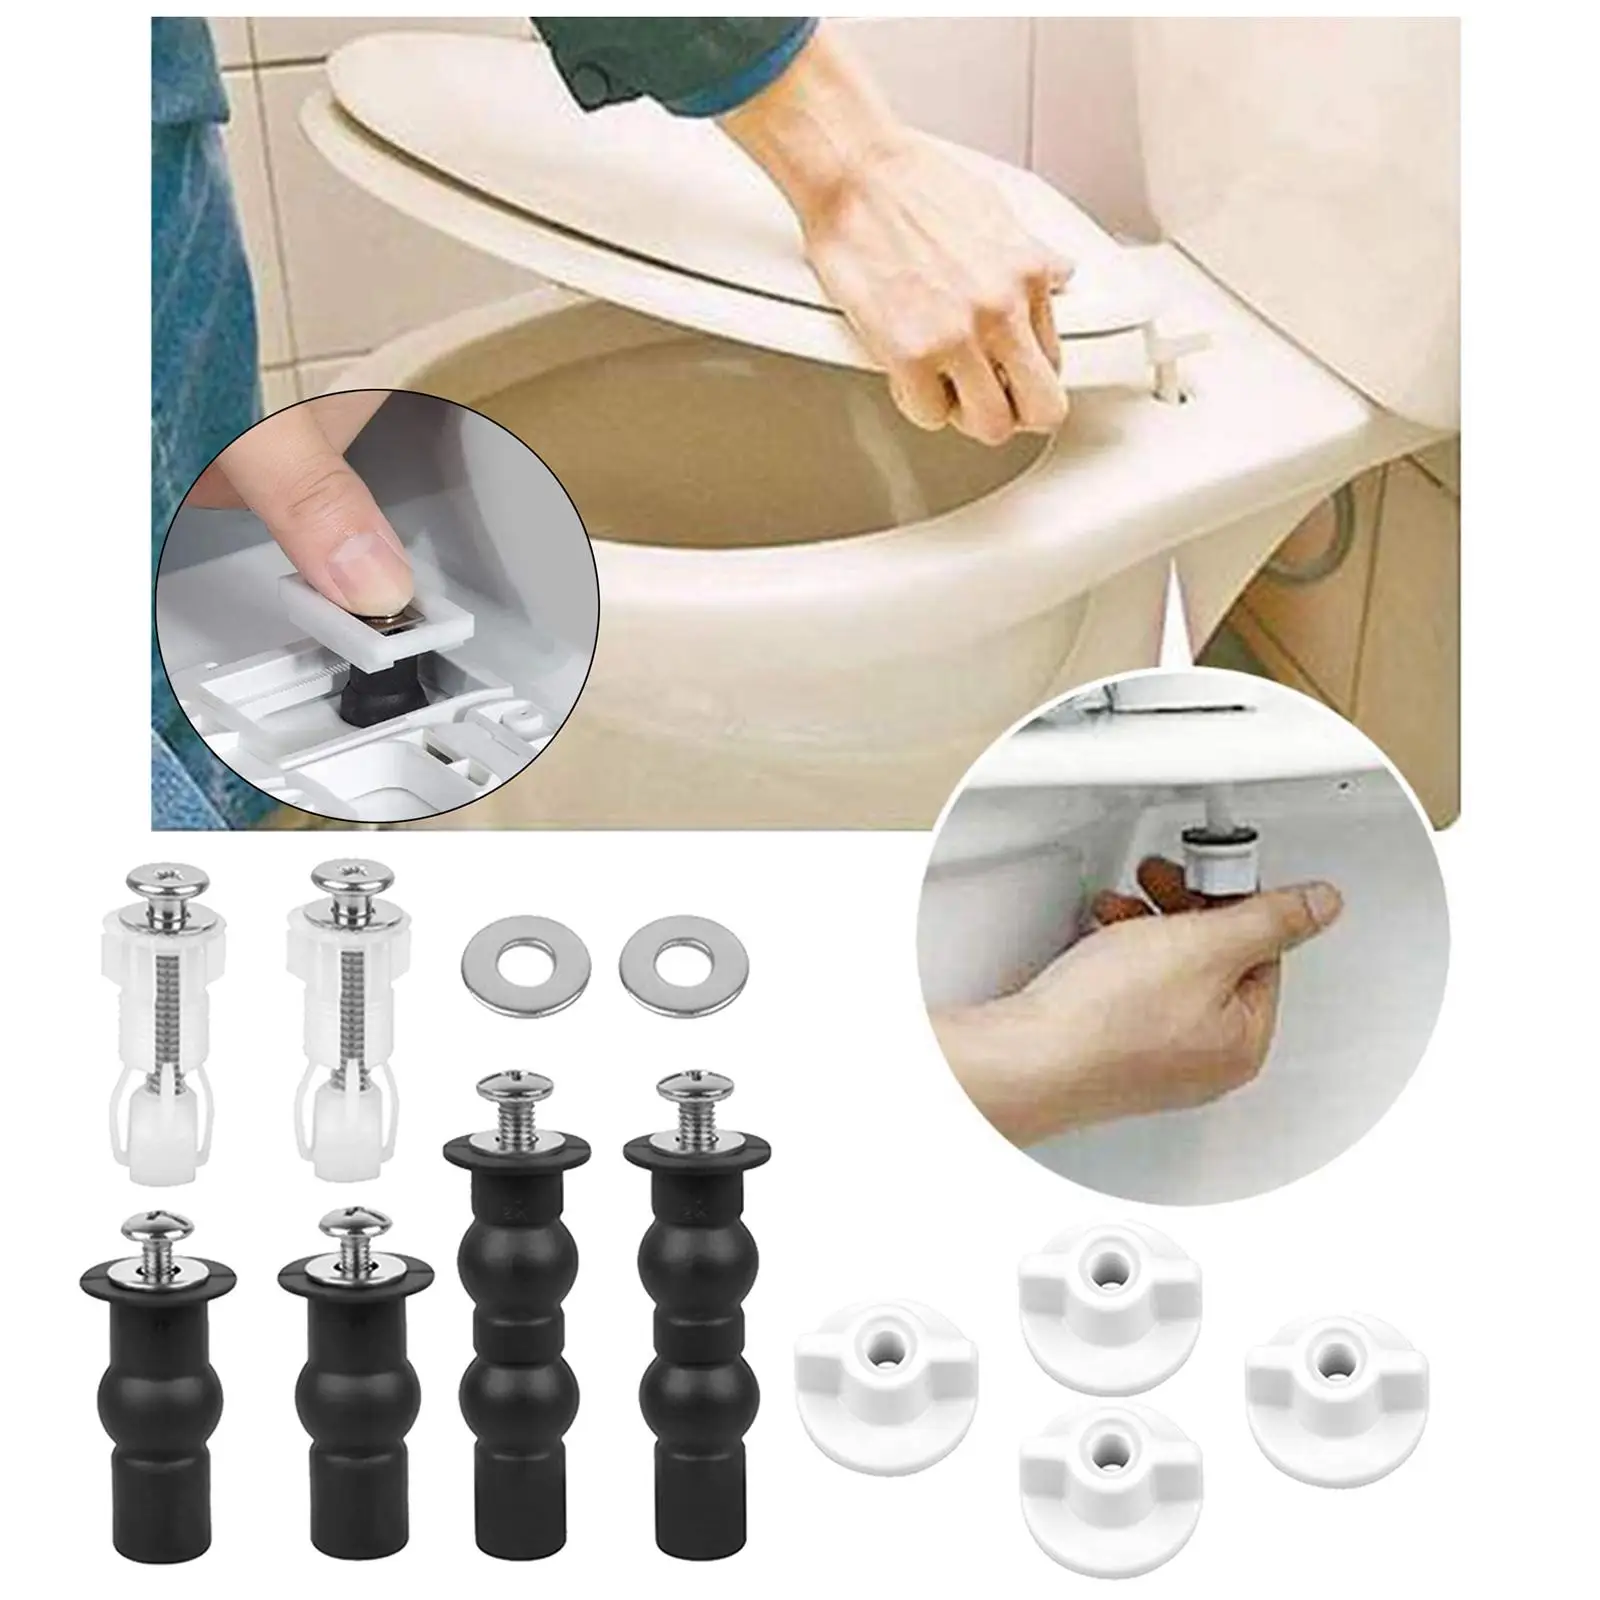 Universal Screw Toilet Toilet Seat Fixing Screws Toilet Cover Accessories Expansion Screws Toilet Seat Installation Kit